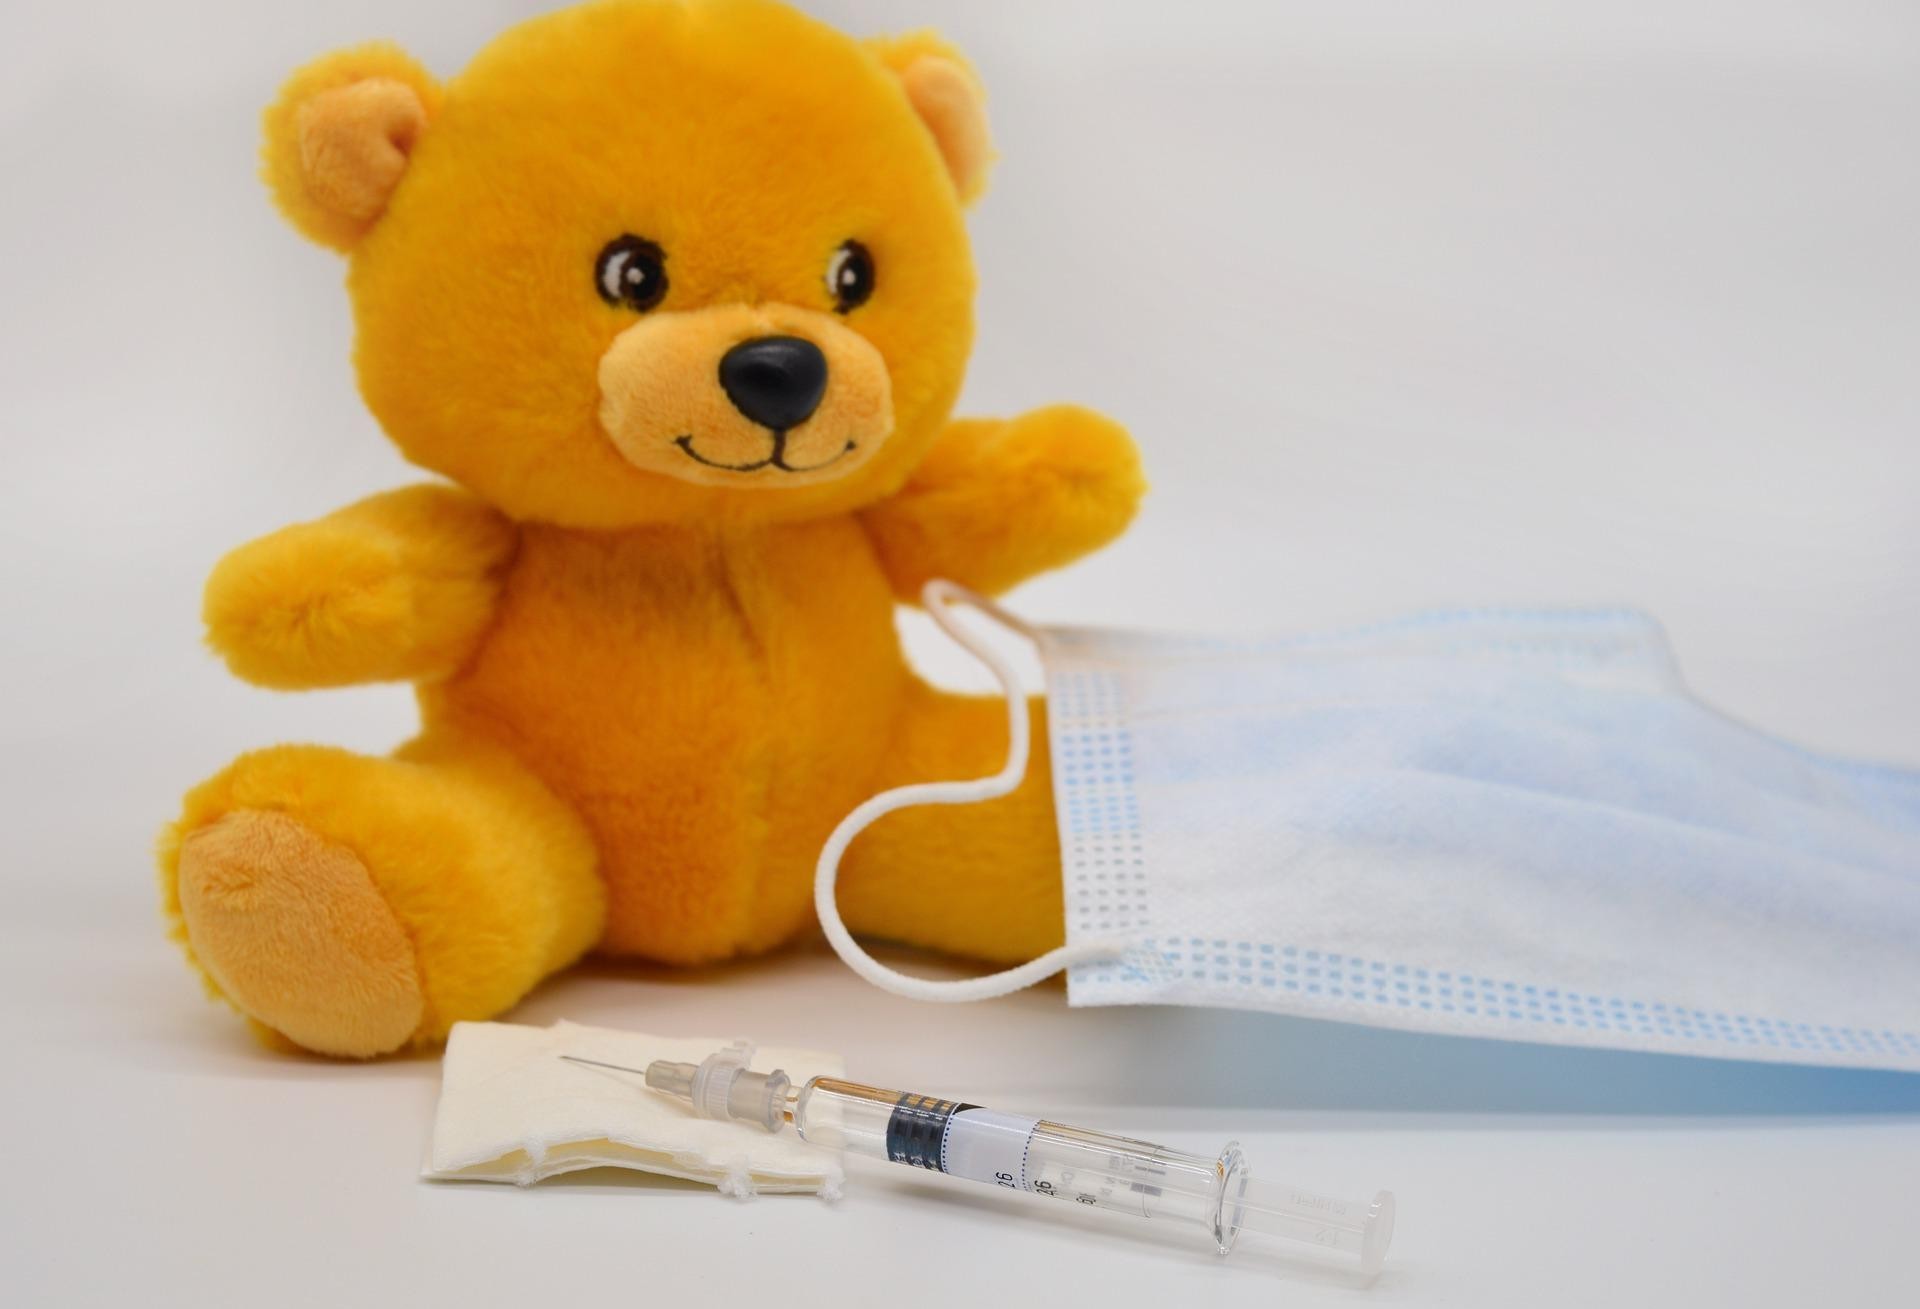 Cascavel realiza "Dia D" de Multivacinação e imunização contra pólio neste sábado